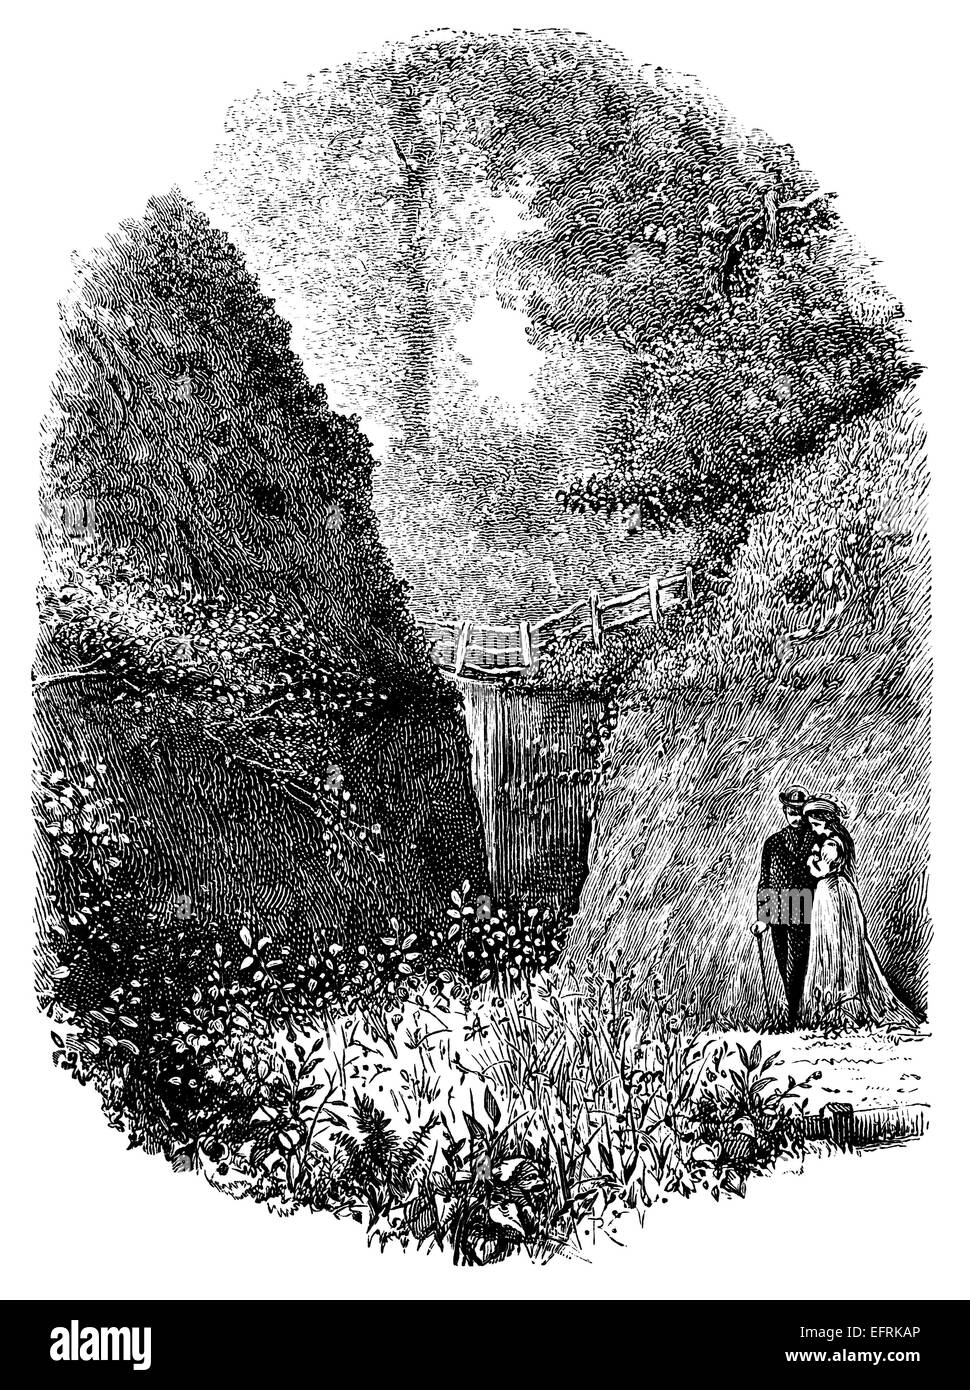 fotografiert von einem Buch mit dem Titel "Englische Bilder gemalt mit Feder und Bleistift" in London ca. 1870 veröffentlicht.  Urheberrecht hat expir Stockfoto